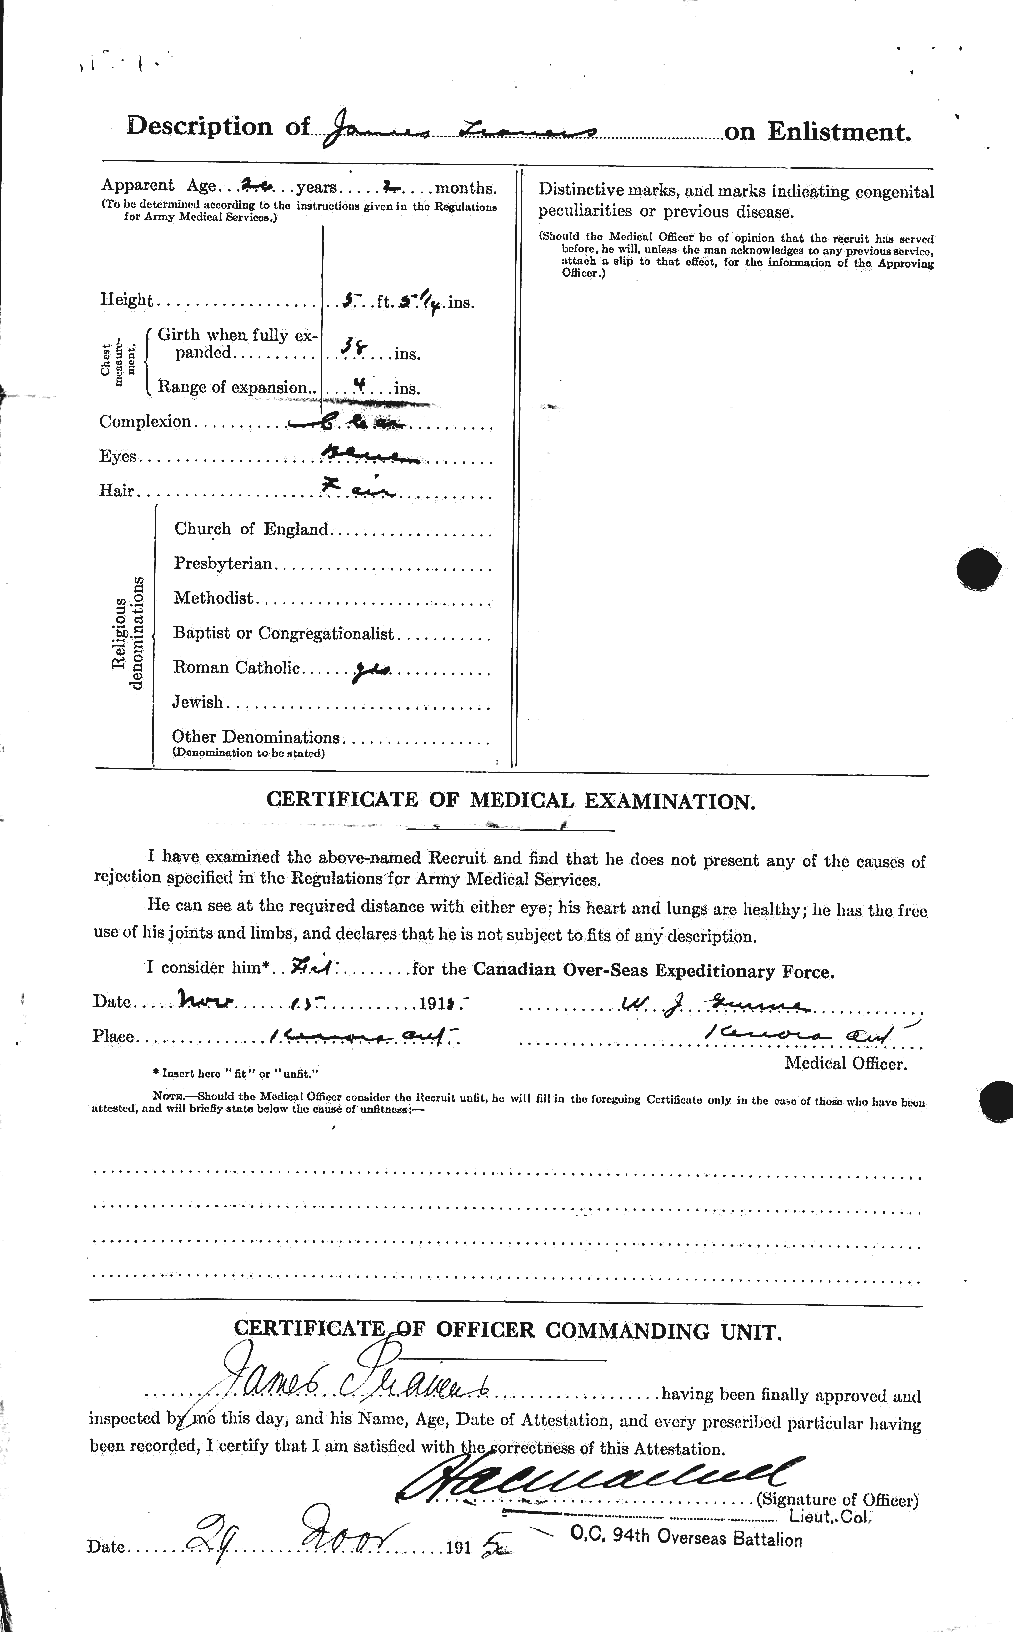 Dossiers du Personnel de la Première Guerre mondiale - CEC 638708b